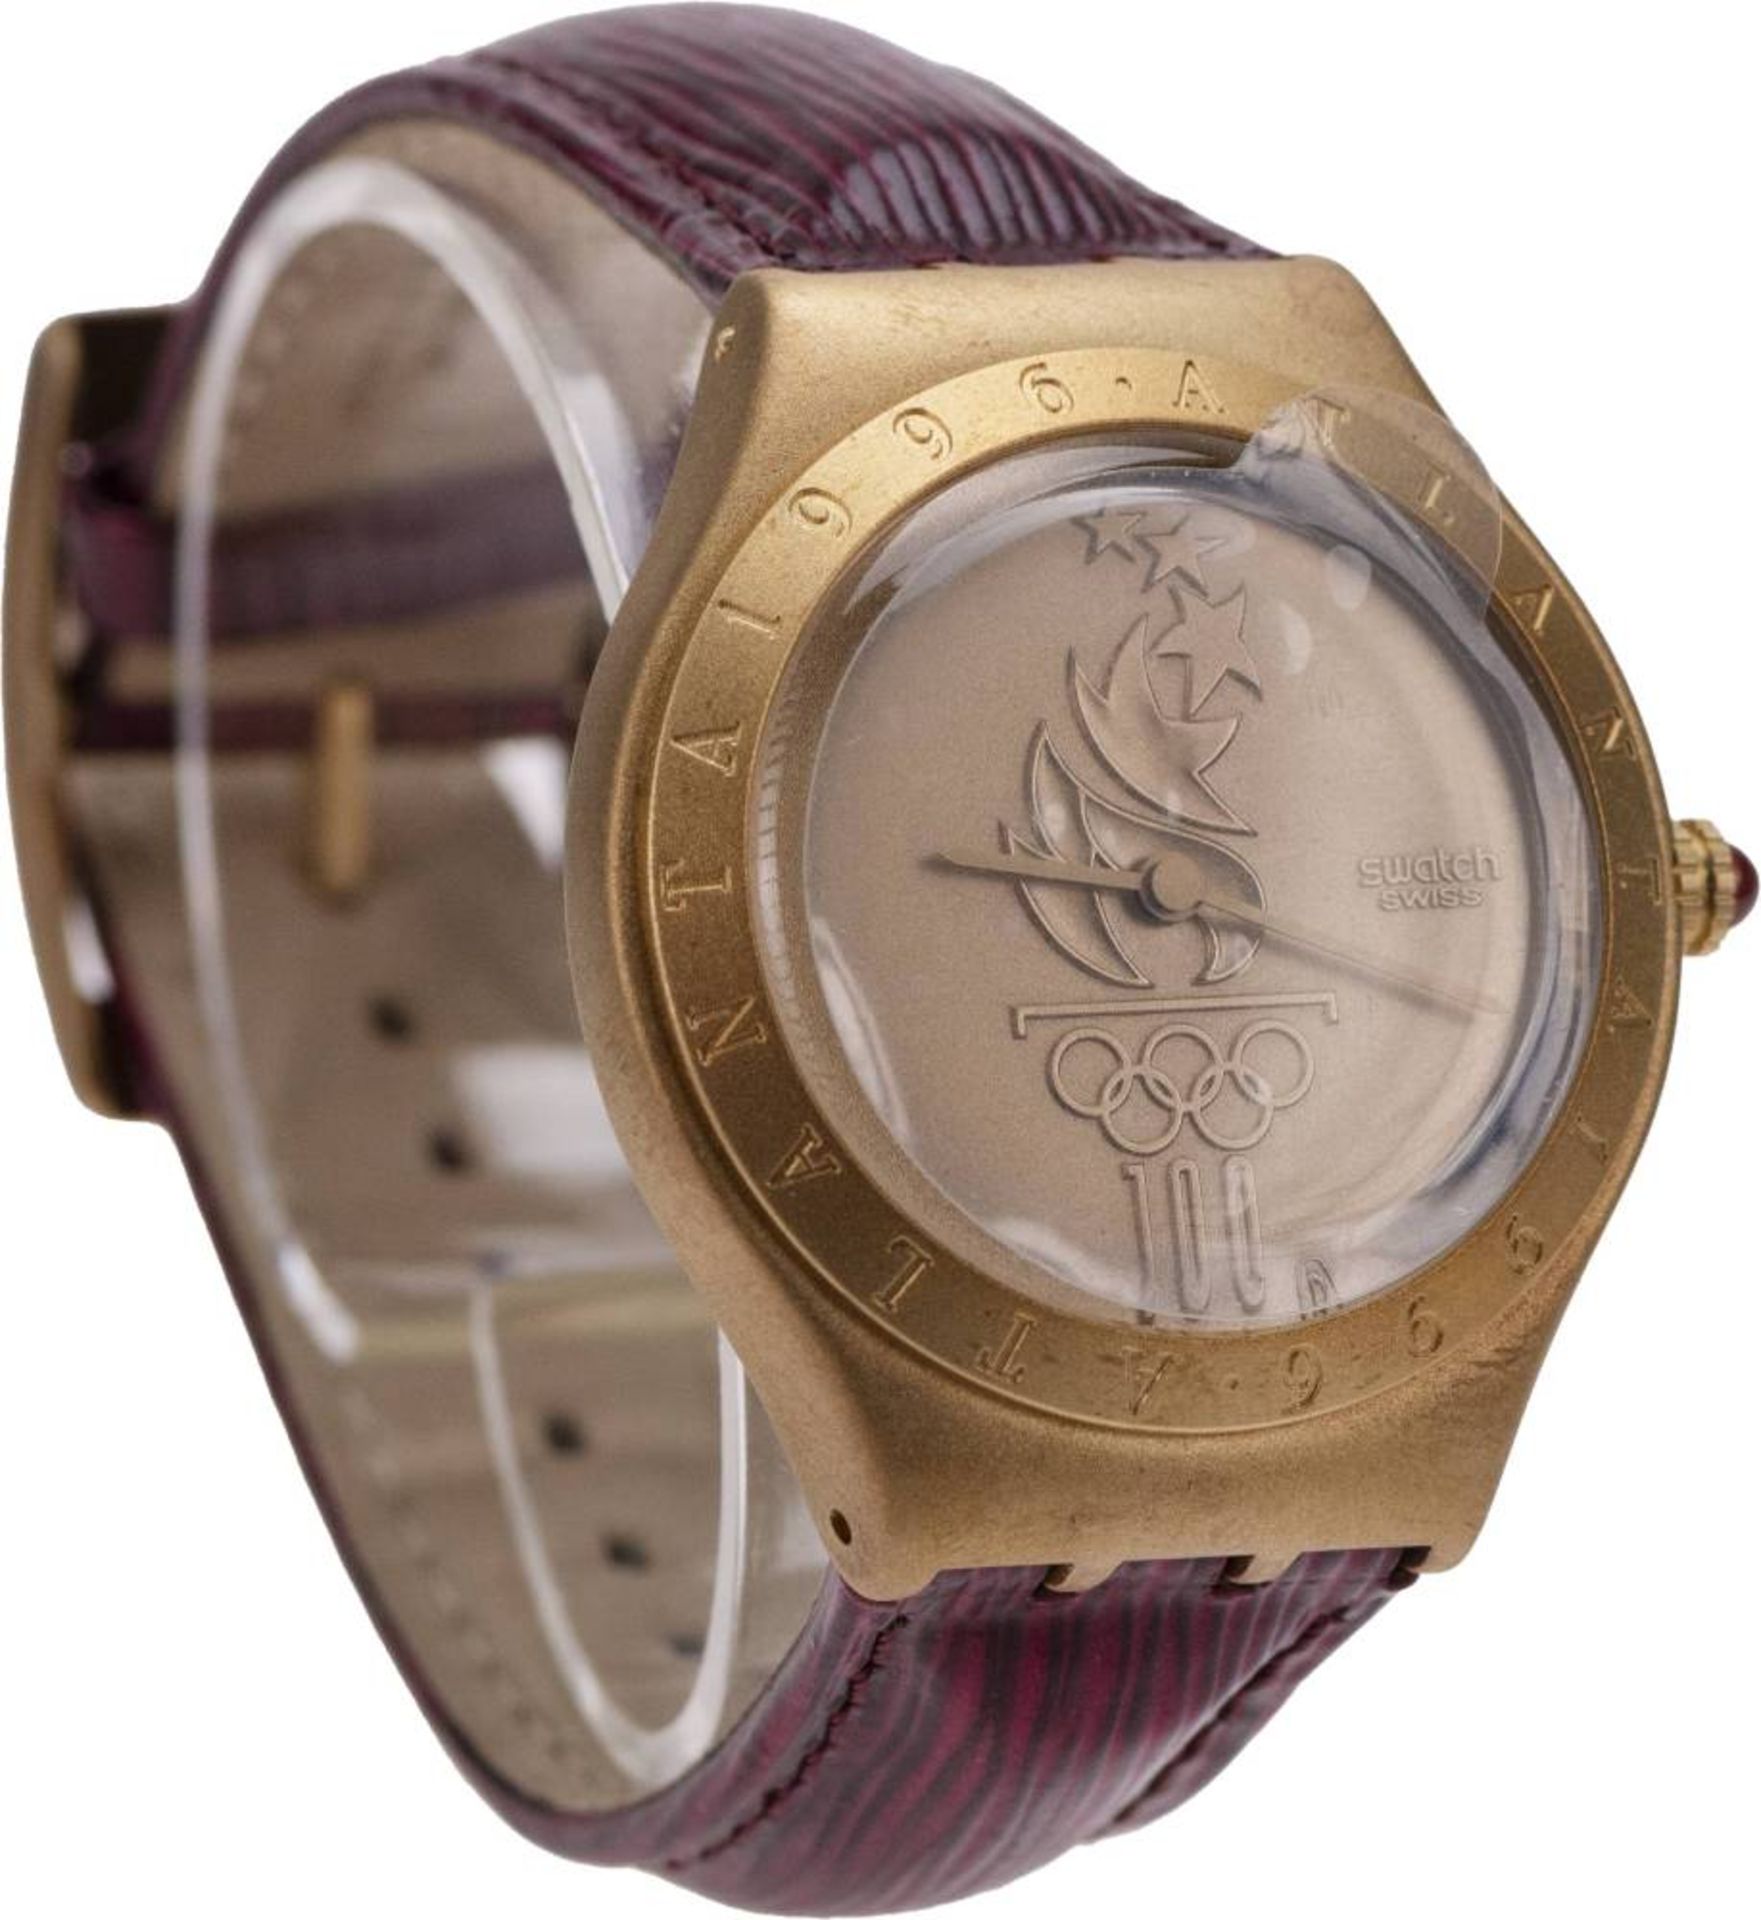 Swatch Irony, Herren-Armbanduhr, ca. 36,7 mm, 750er Gold, Handaufzug, mattgoldenes Ziffernblatt - Image 2 of 2